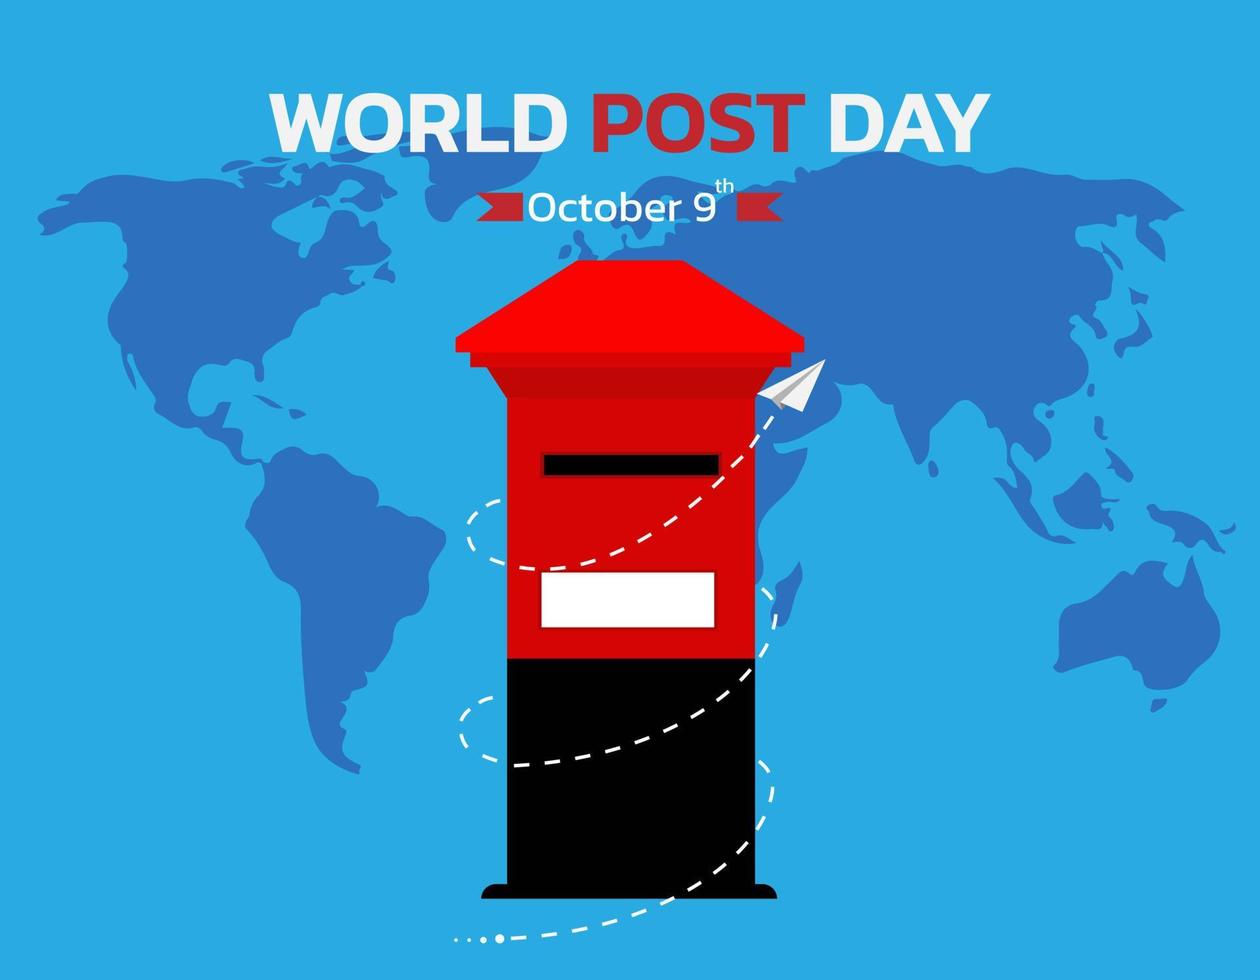 fondo para el día mundial del correo. vector